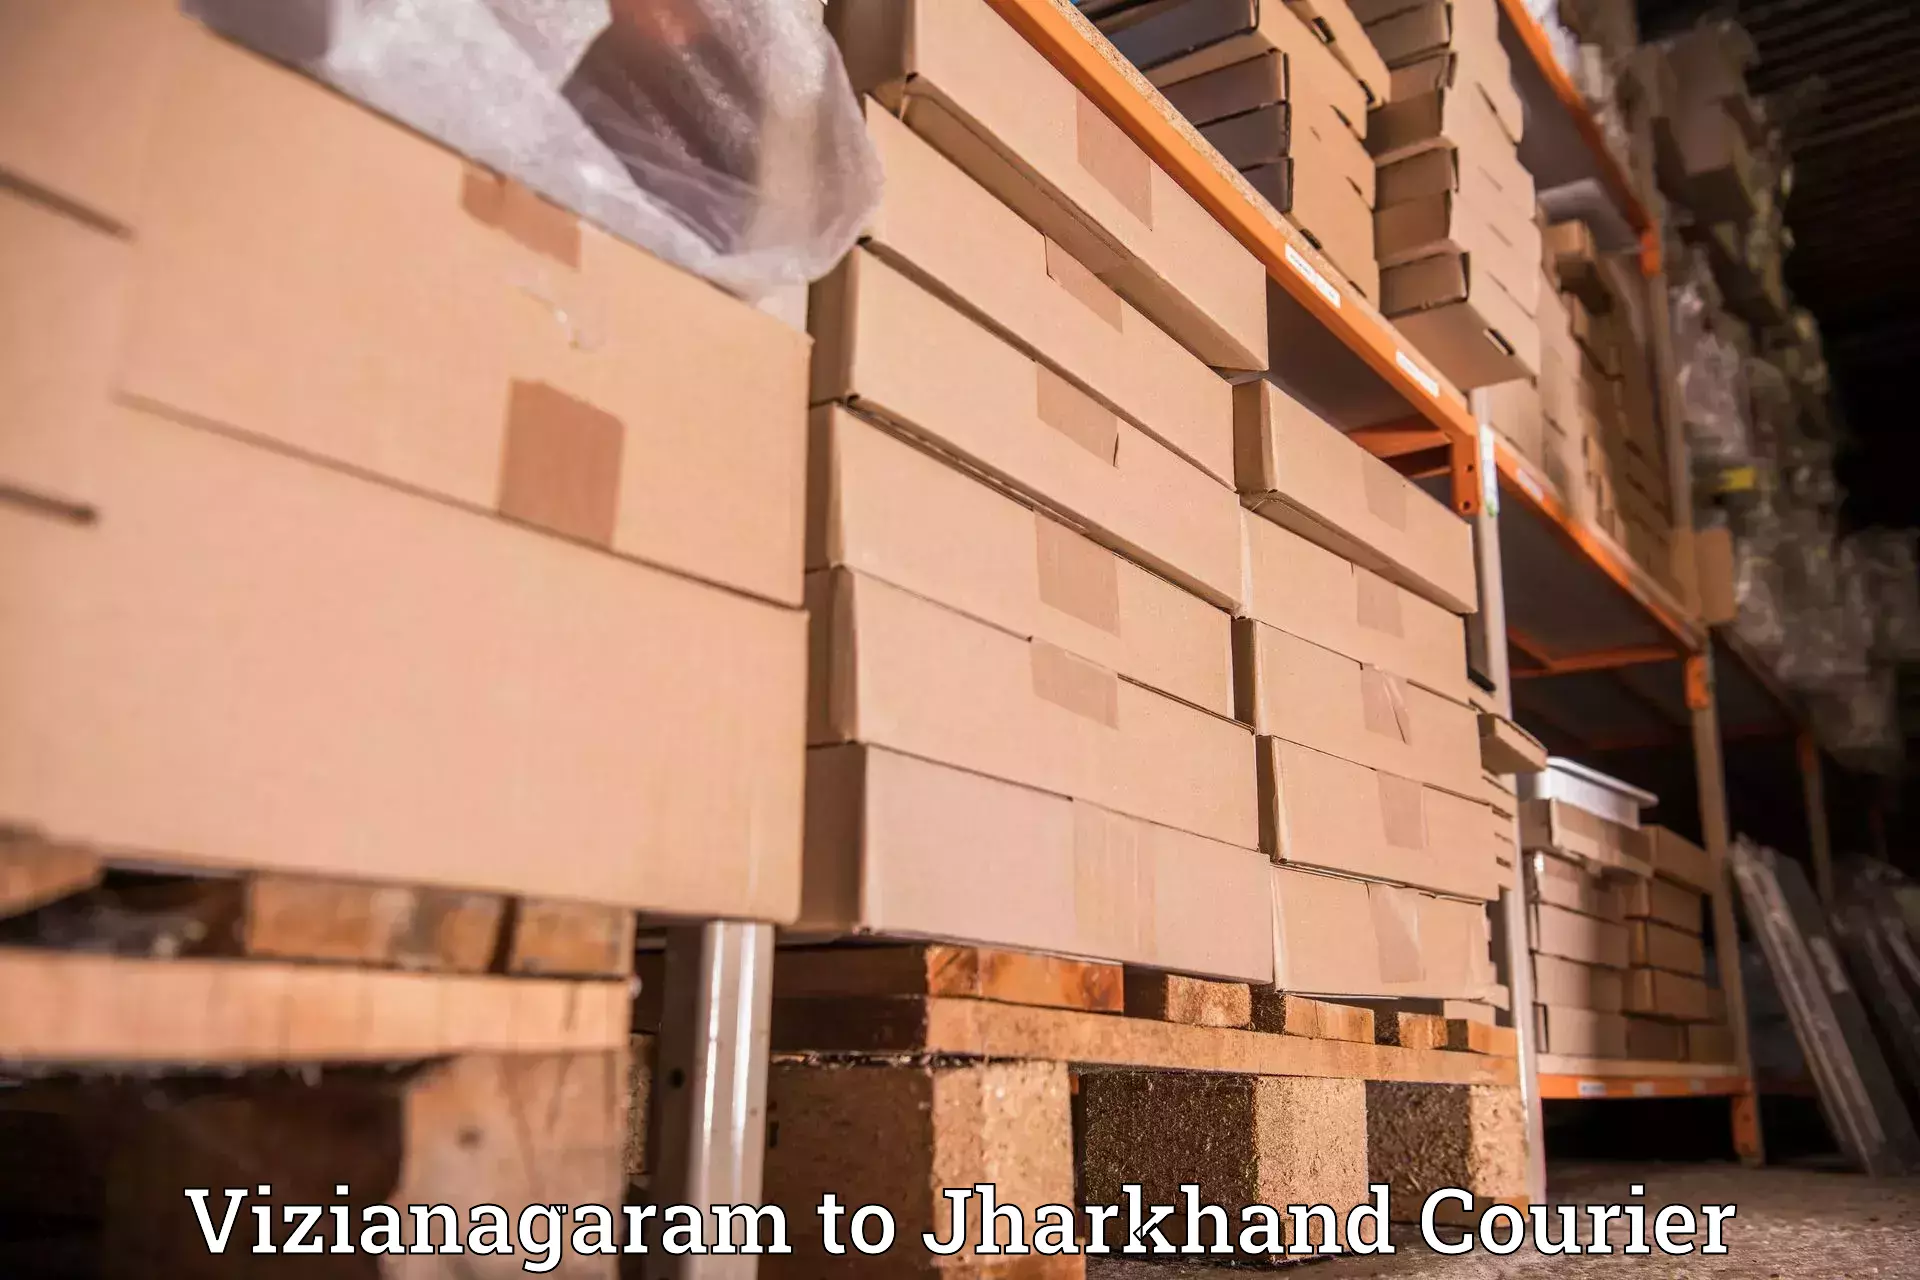 Local courier options Vizianagaram to Jharkhand